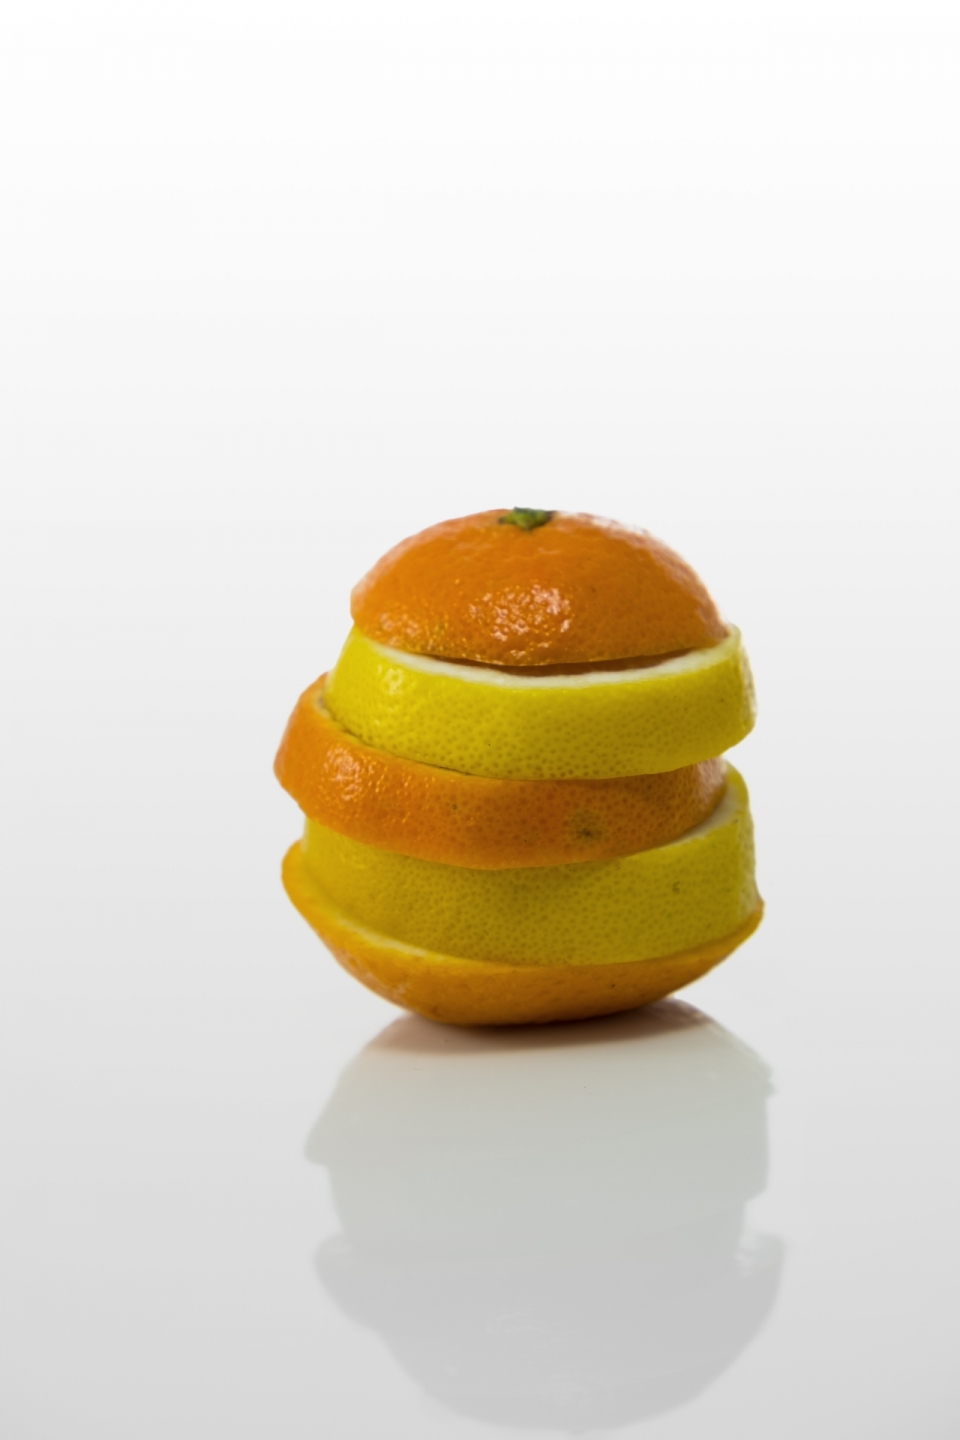 纯色背景橙子和柠檬切开交错摆放静物摄影